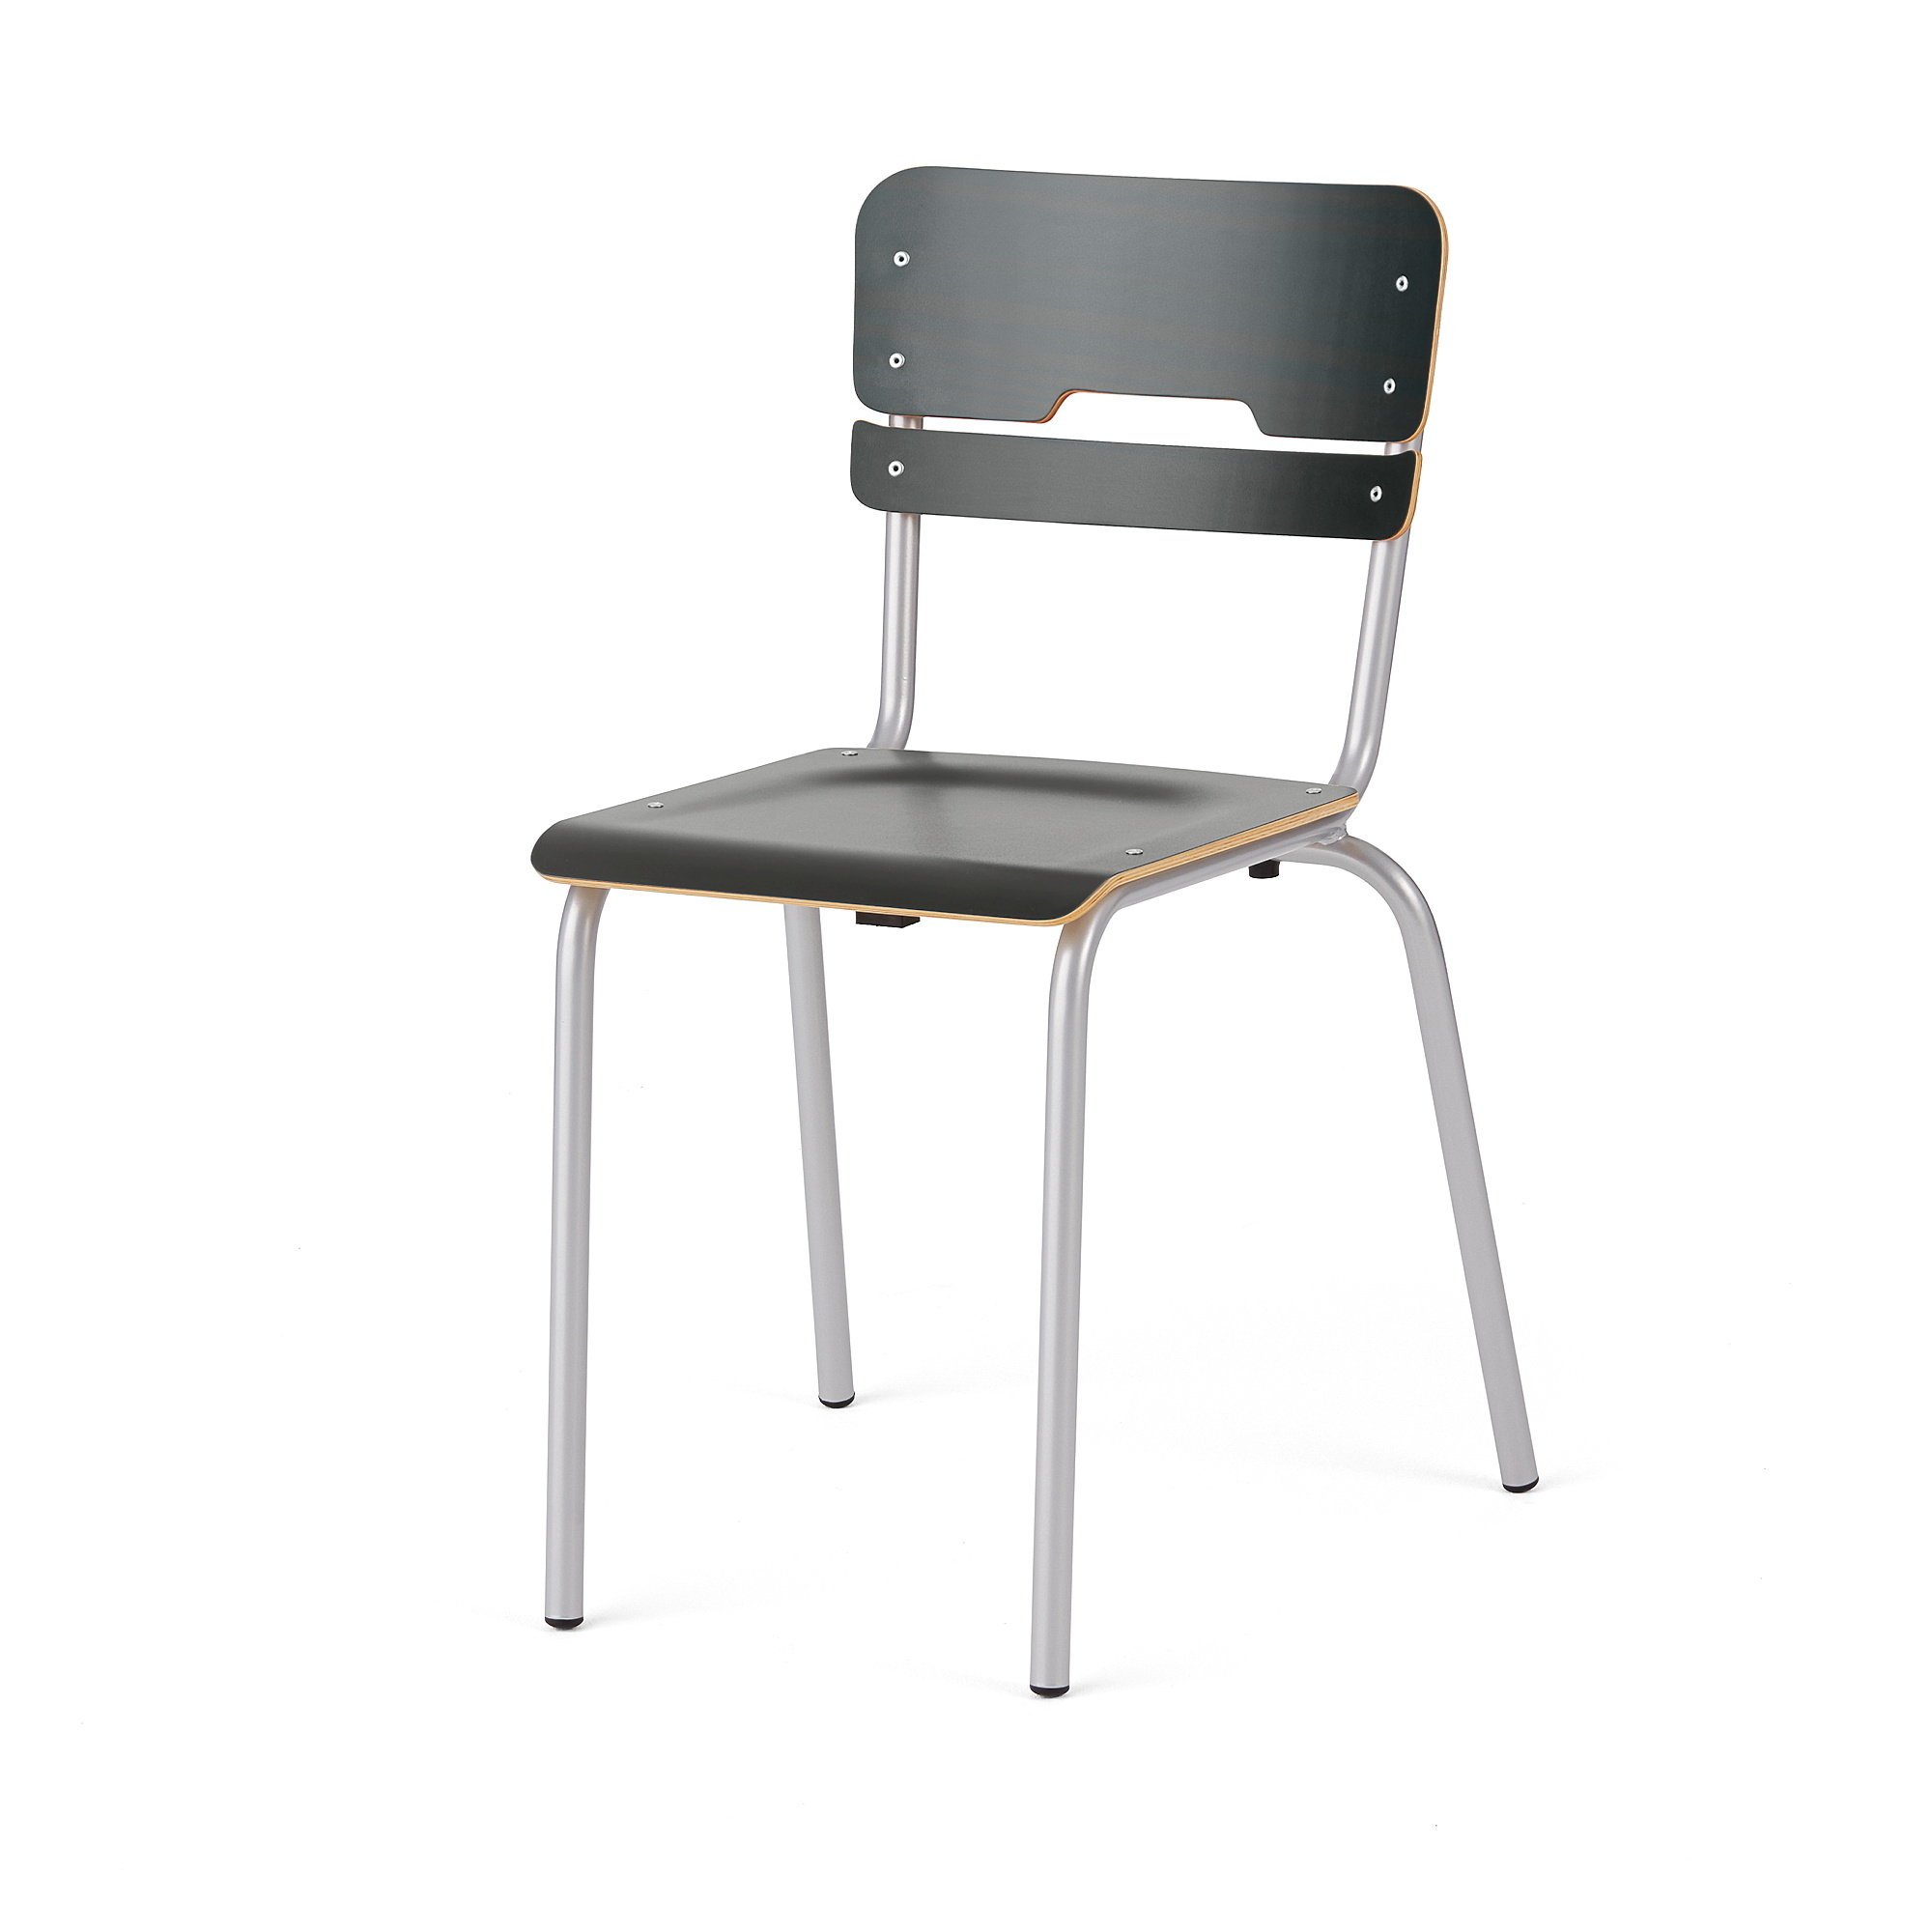 Školní židle SCIENTIA, sedák 360x360 mm, výška 460 mm, stříbrná/antracitová